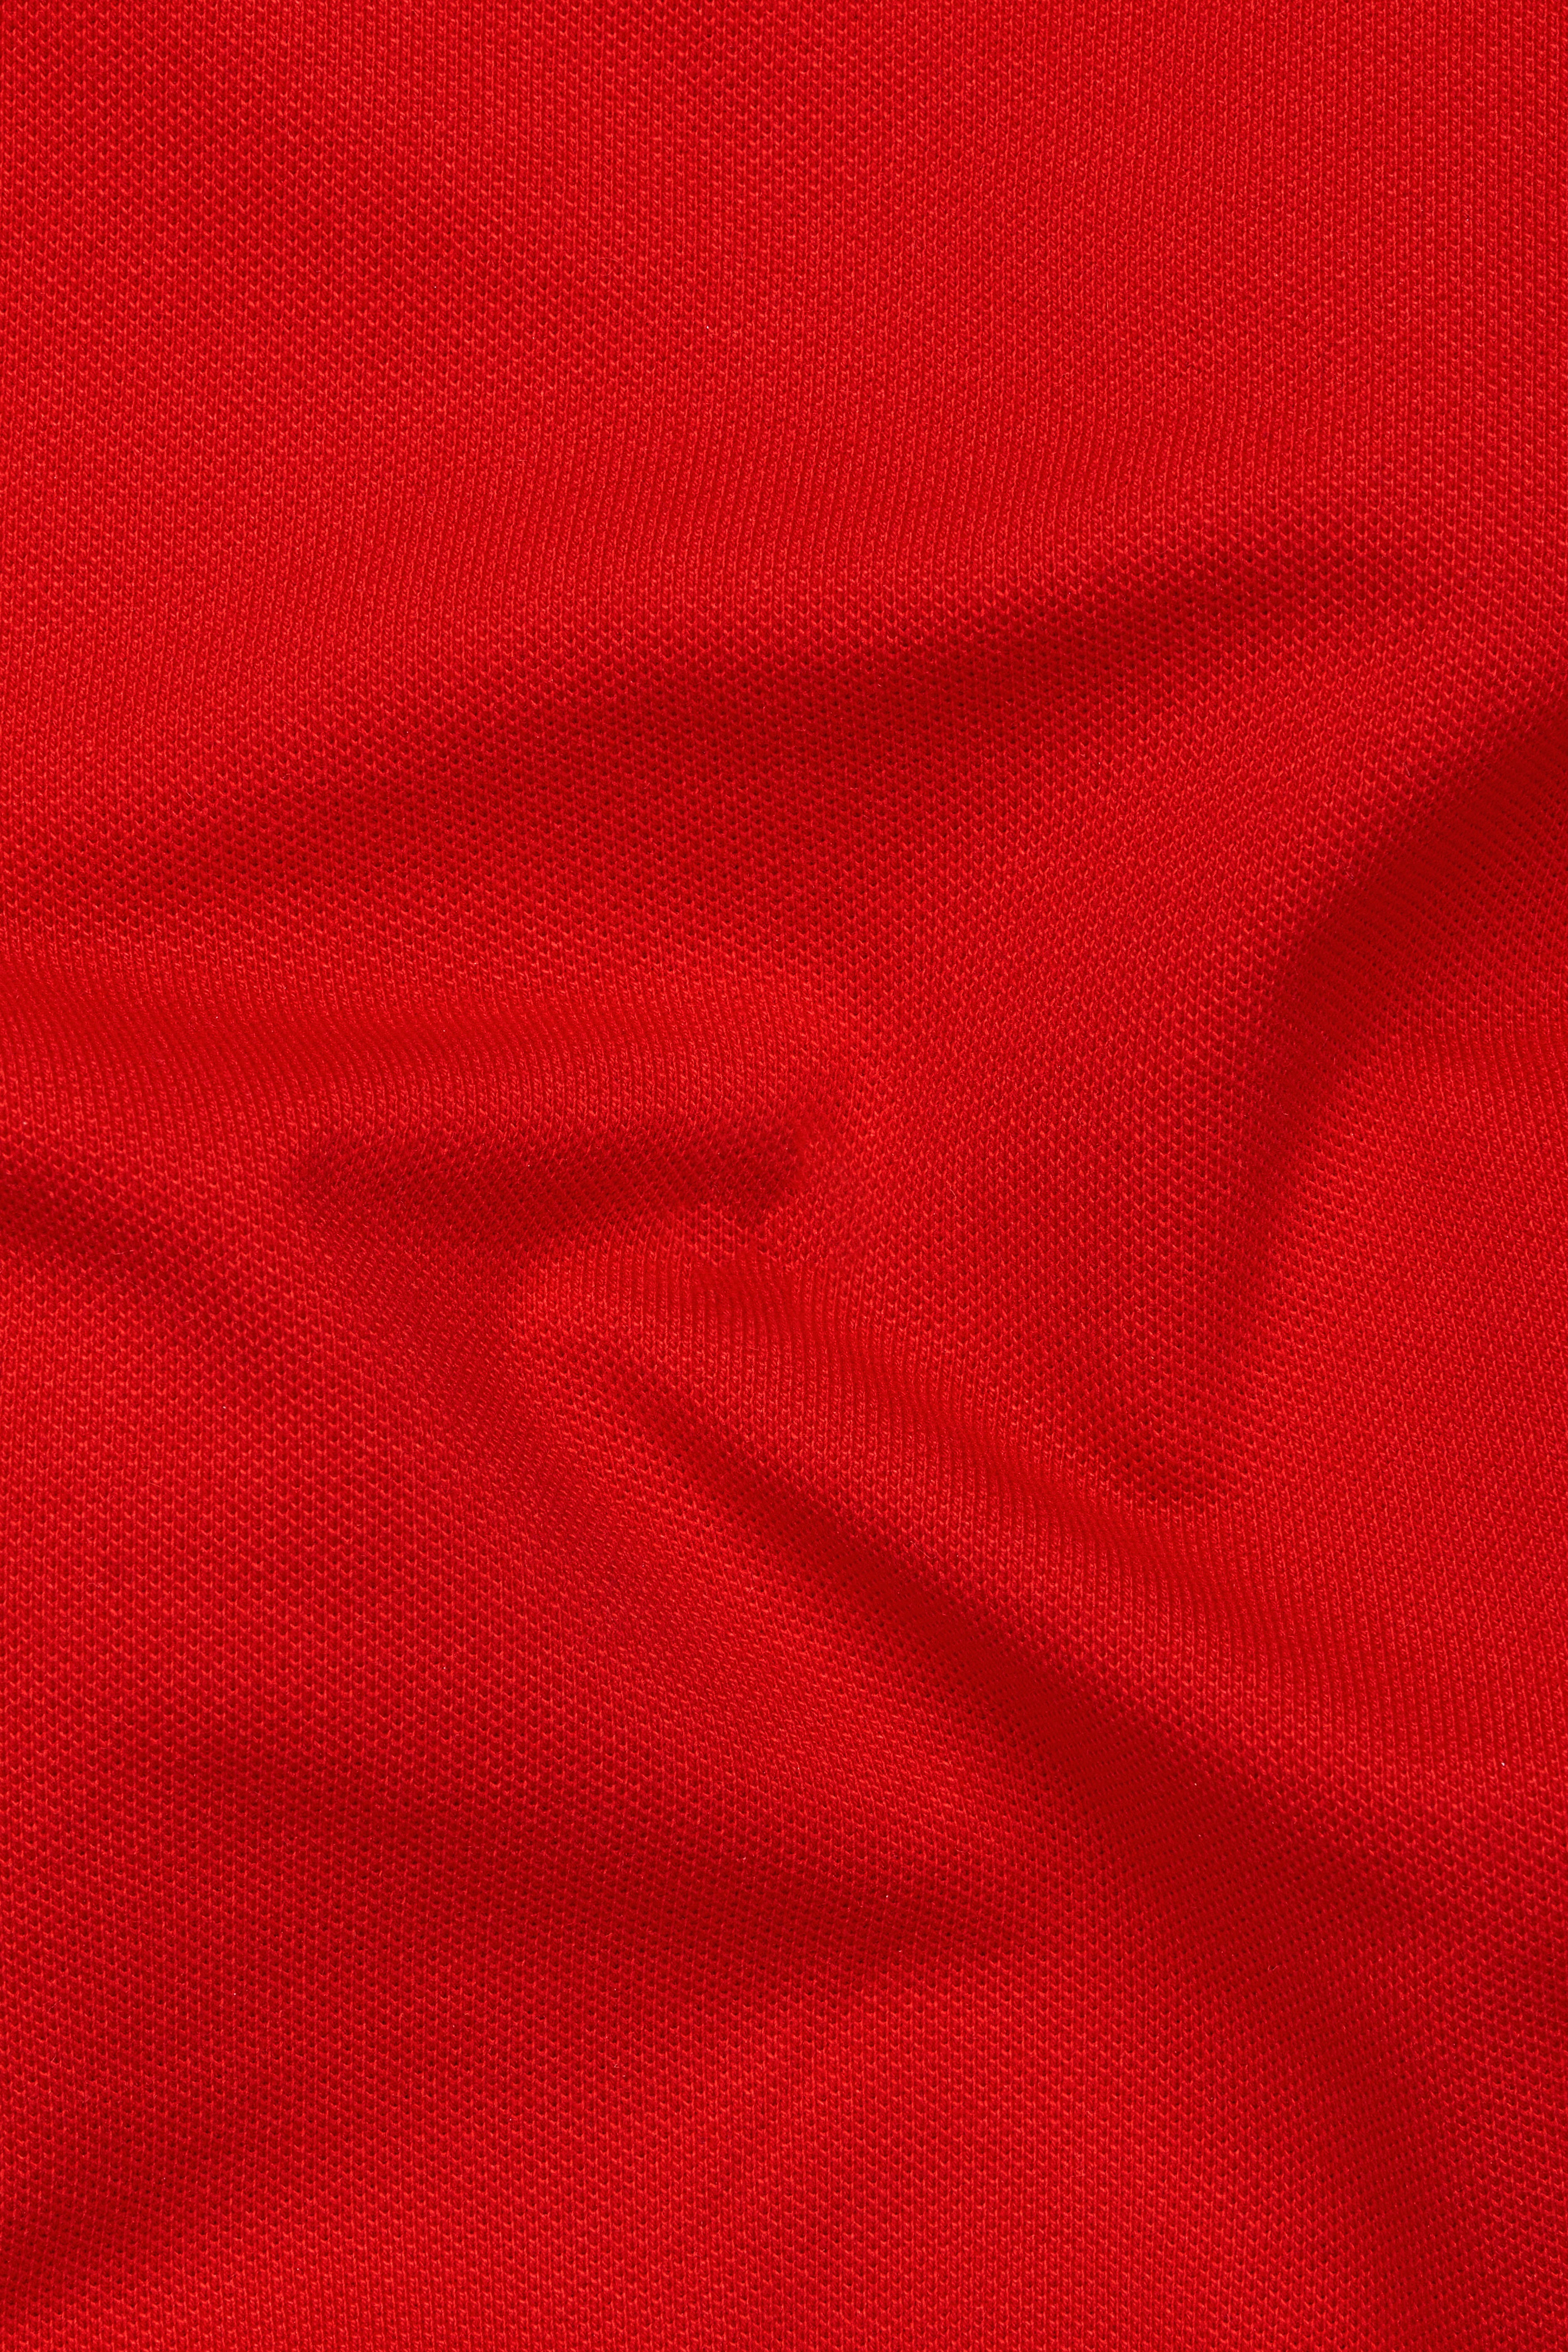 Guardsman Red Premium Cotton Pique Polo TS927-S, TS927-M, TS927-L, TS927-XL, TS927-XXL